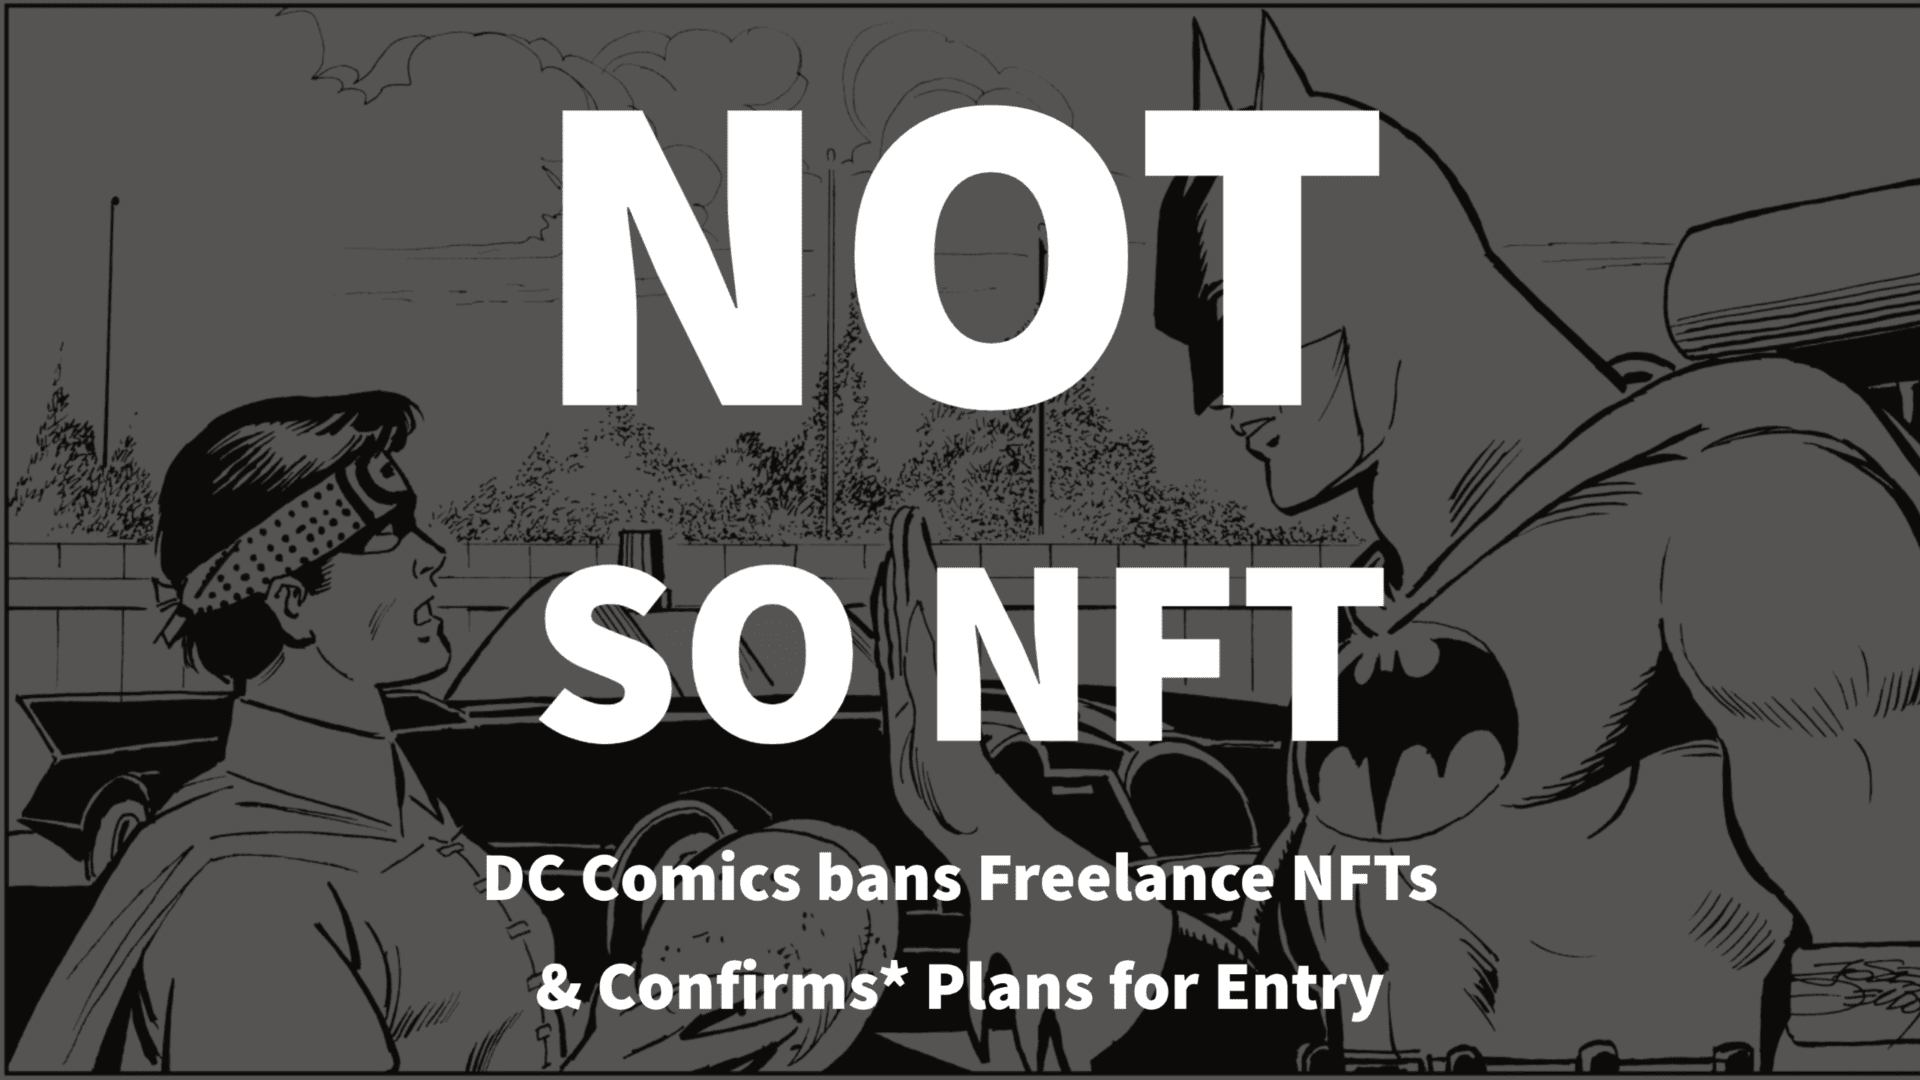 Not So NFT: Batman is off limits